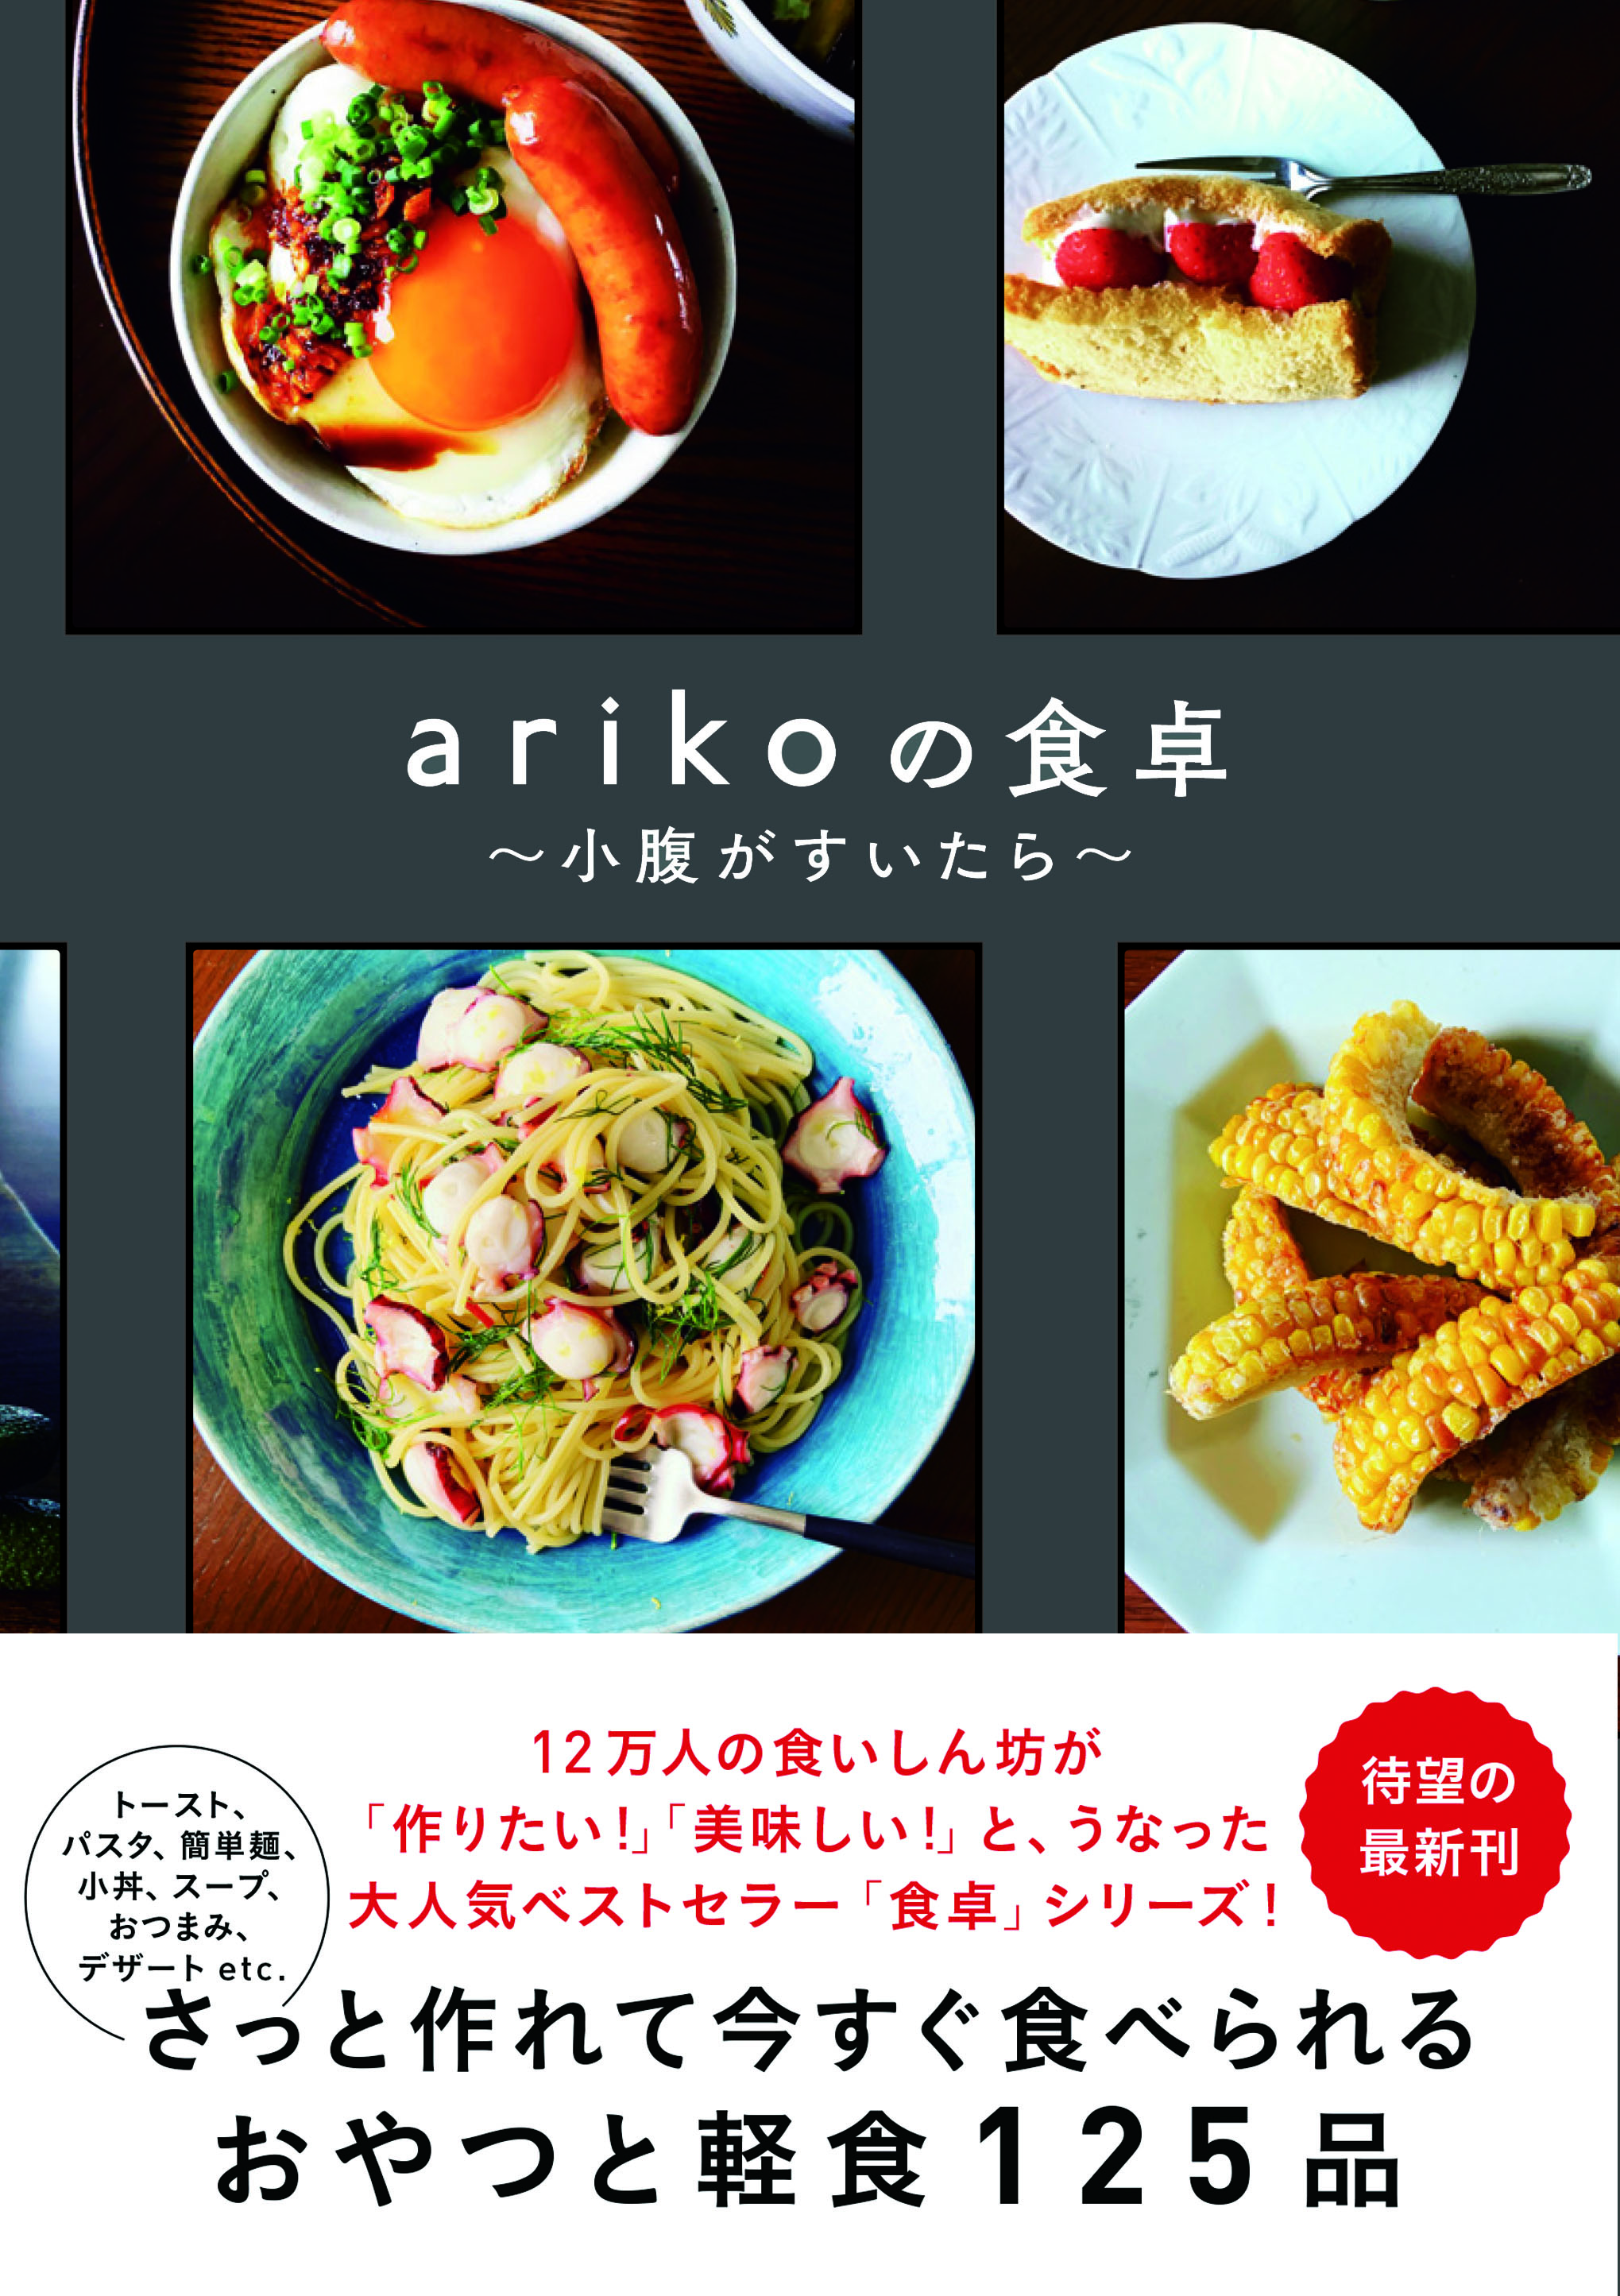 炒めて混ぜれば割烹ごはん♪ インスタで人気のarikoレシピ「豚バラとエリンギの混ぜごはん」 098-H1-ariko.jpg